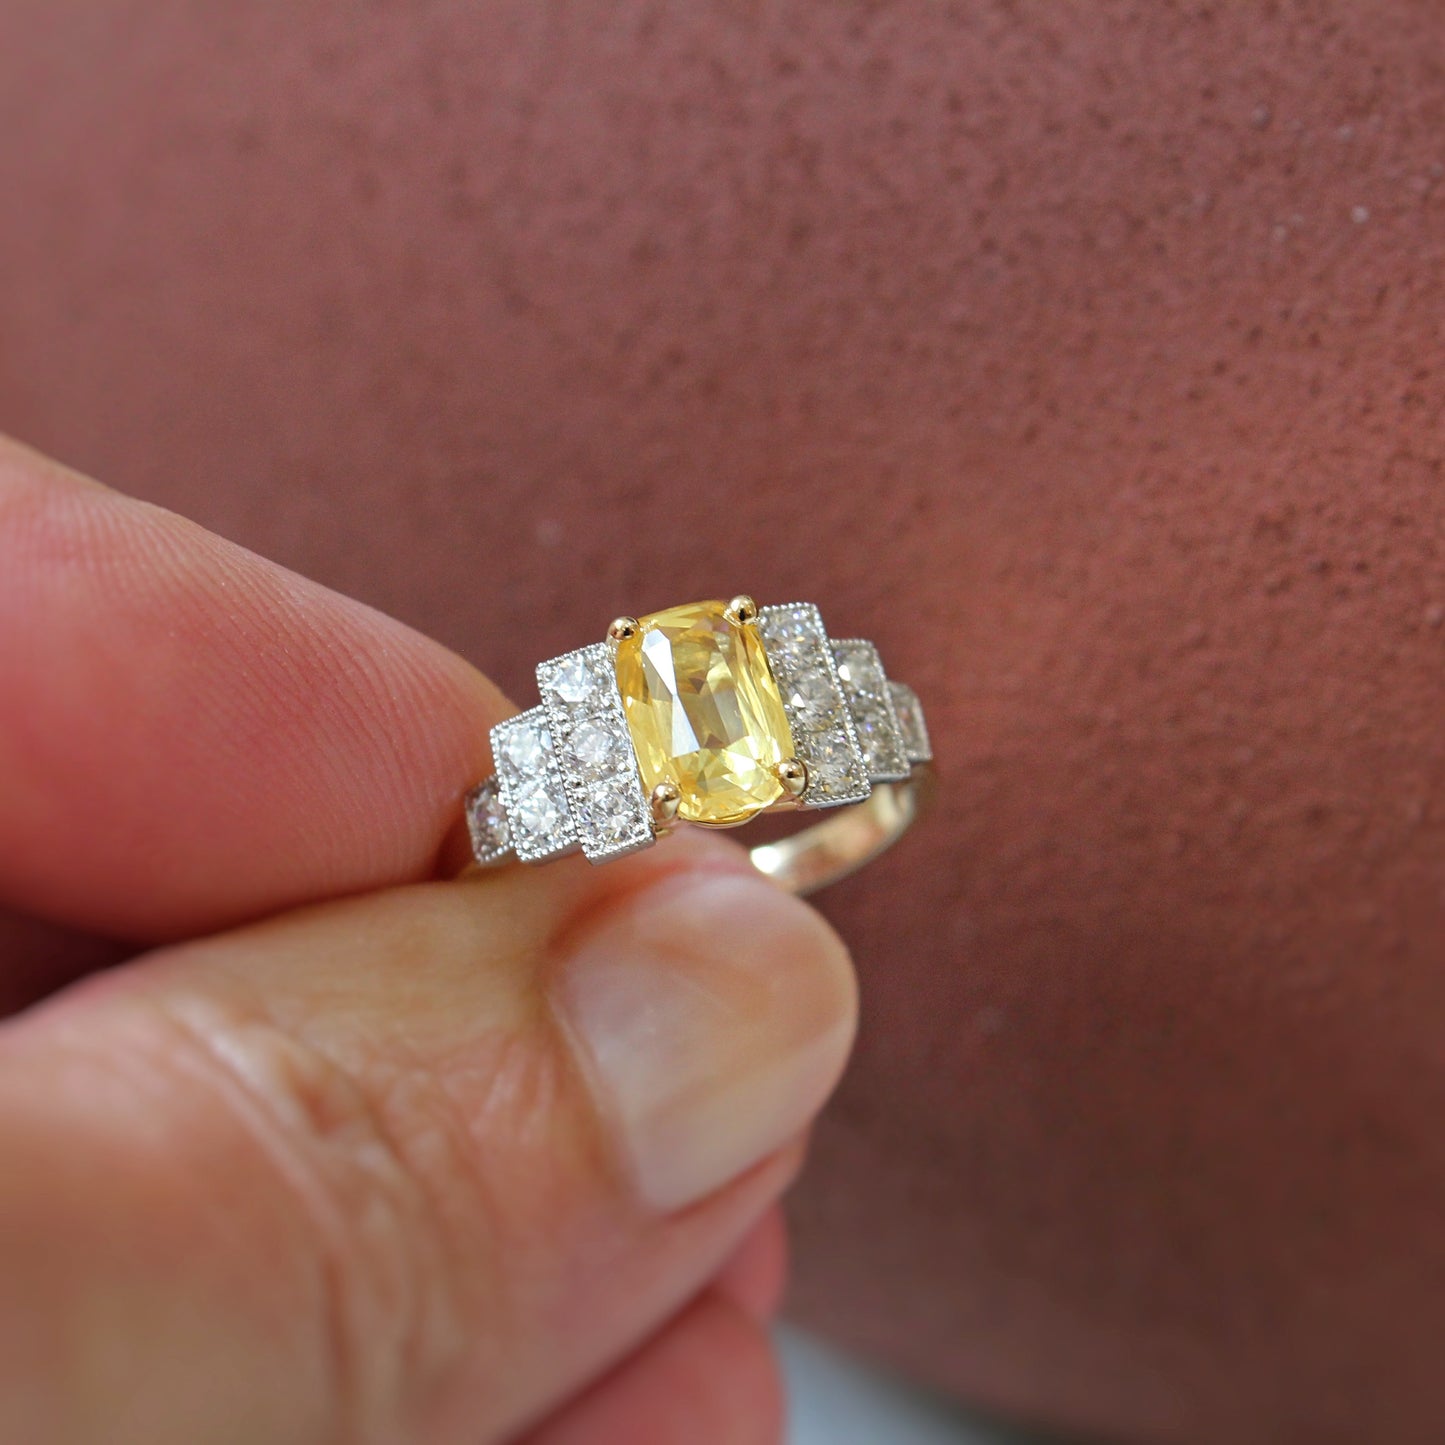 Bague solitaire saphir épaulé en escalier de diamants taille brillant-monture en or jaune et diamants sertis sur platine